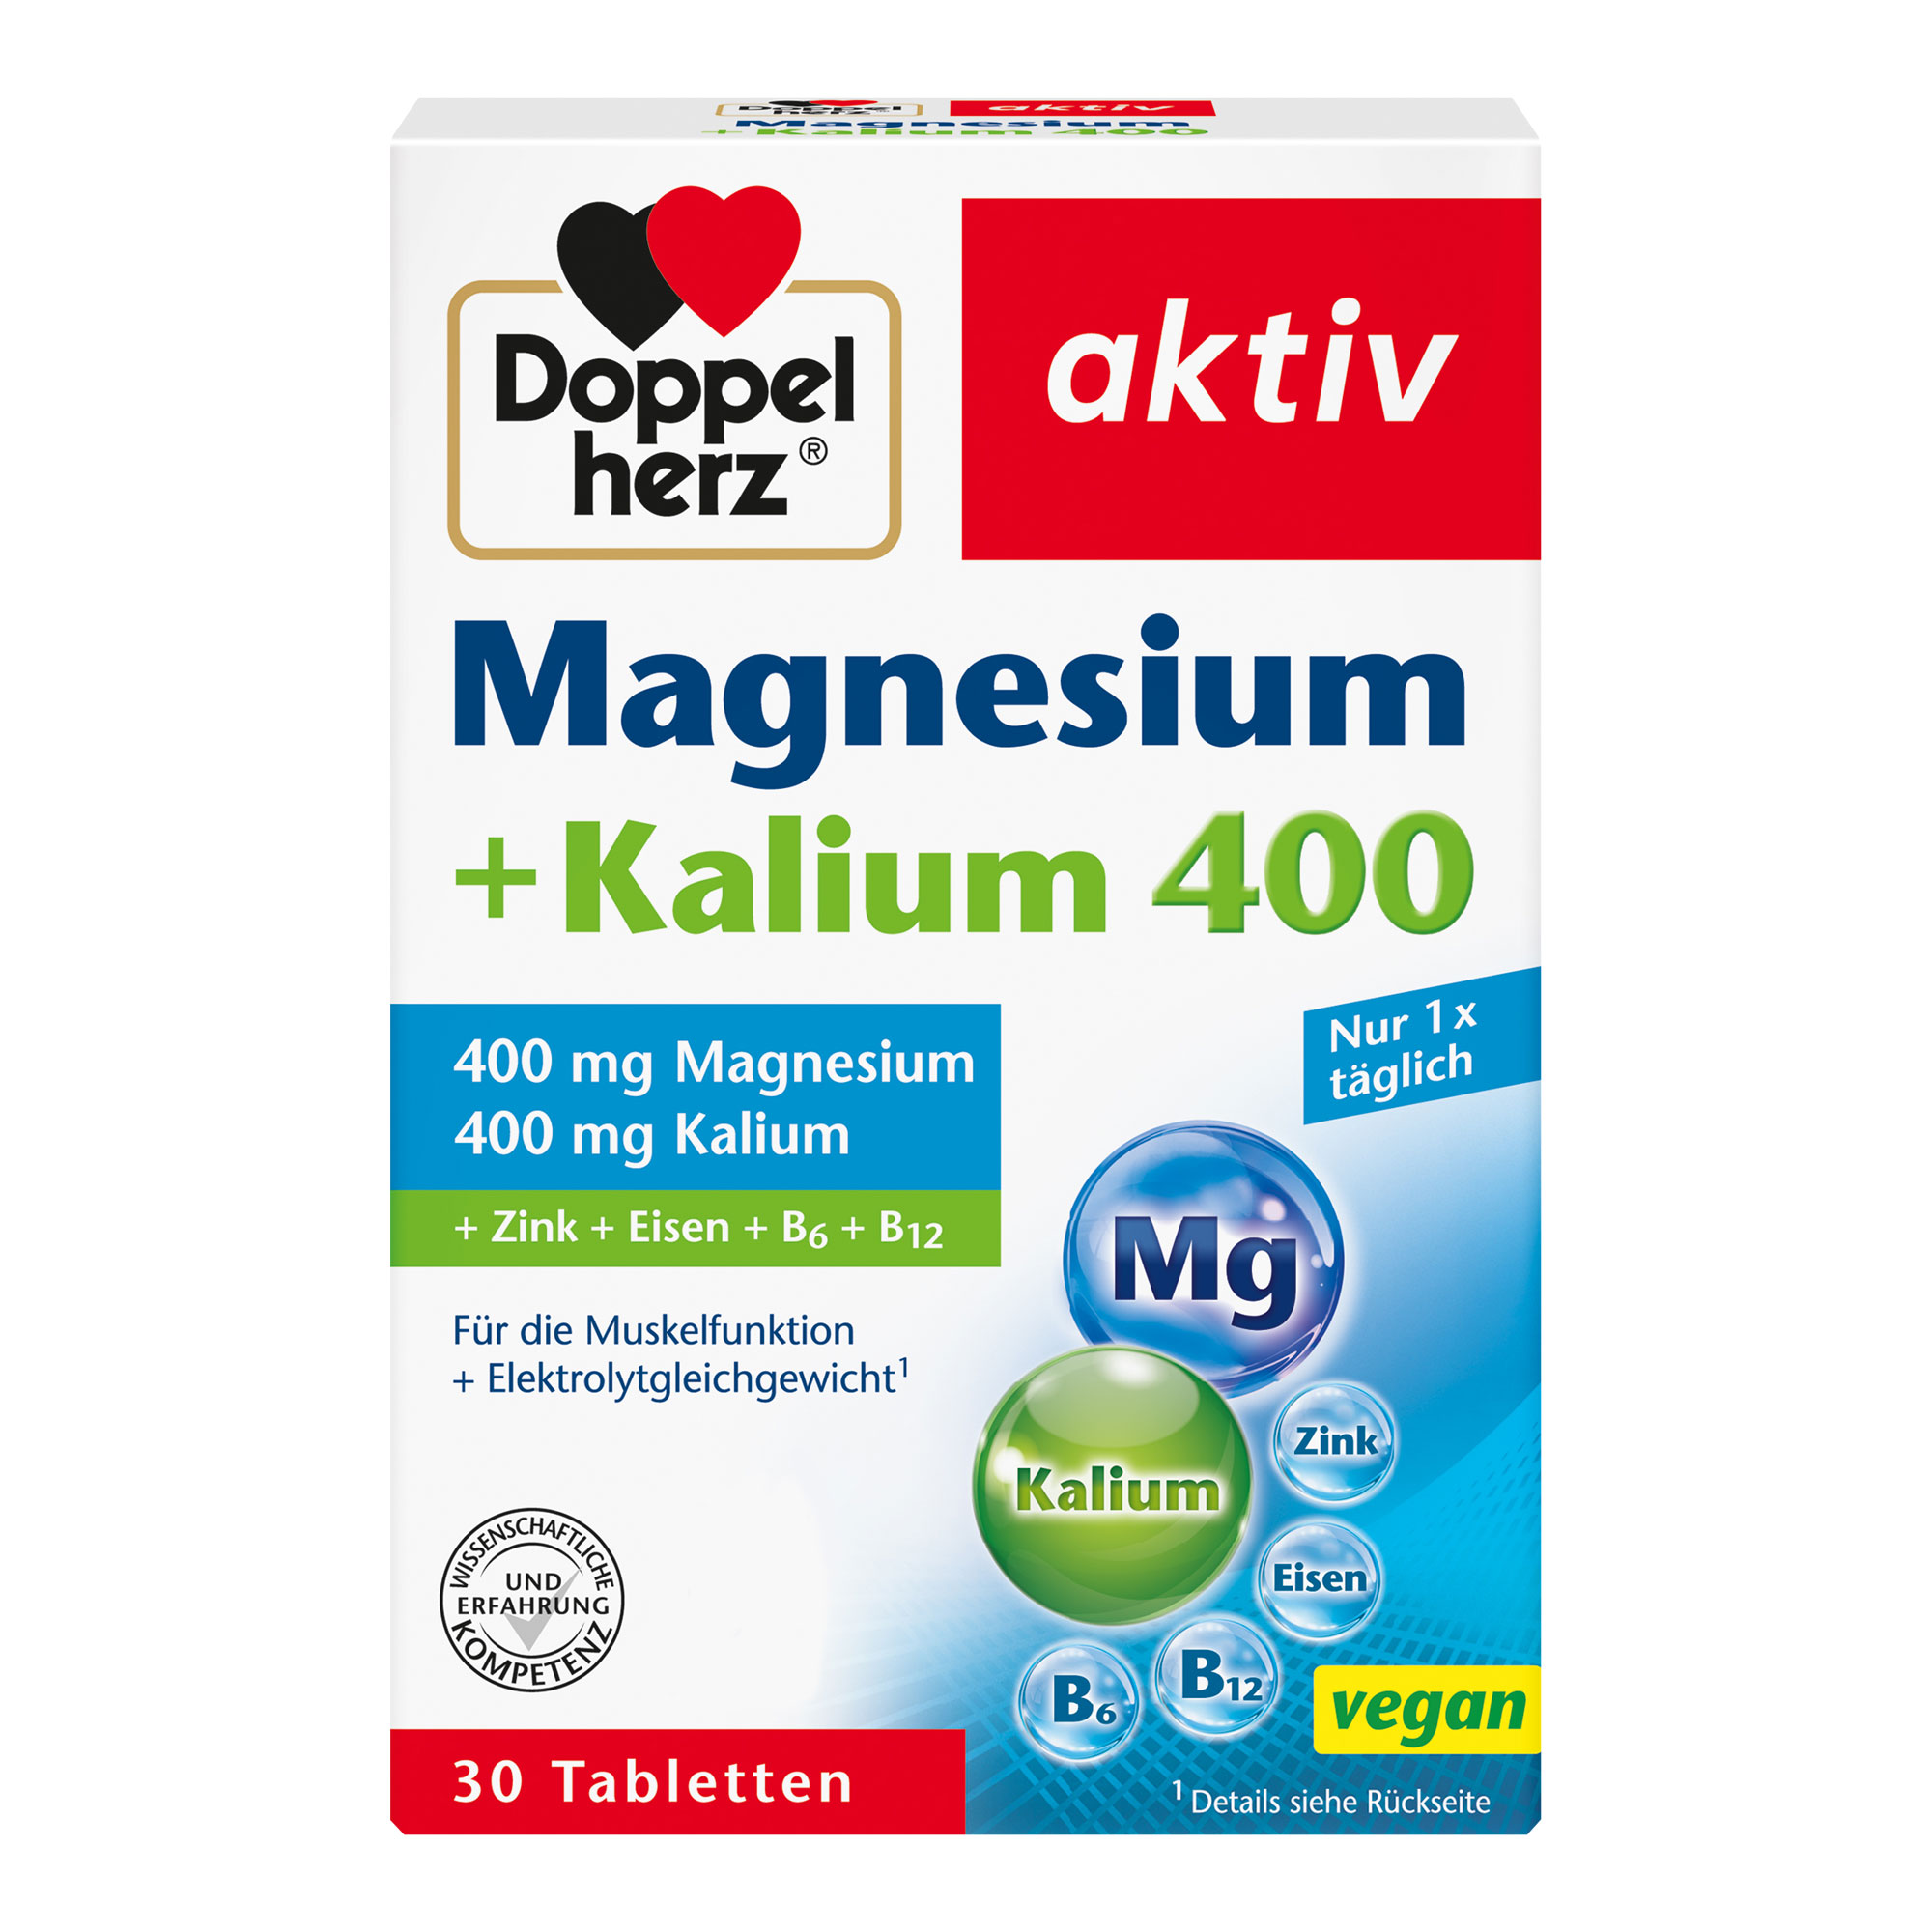 Nahrungsergänzungsmittel mit Magnesium und Kalium.